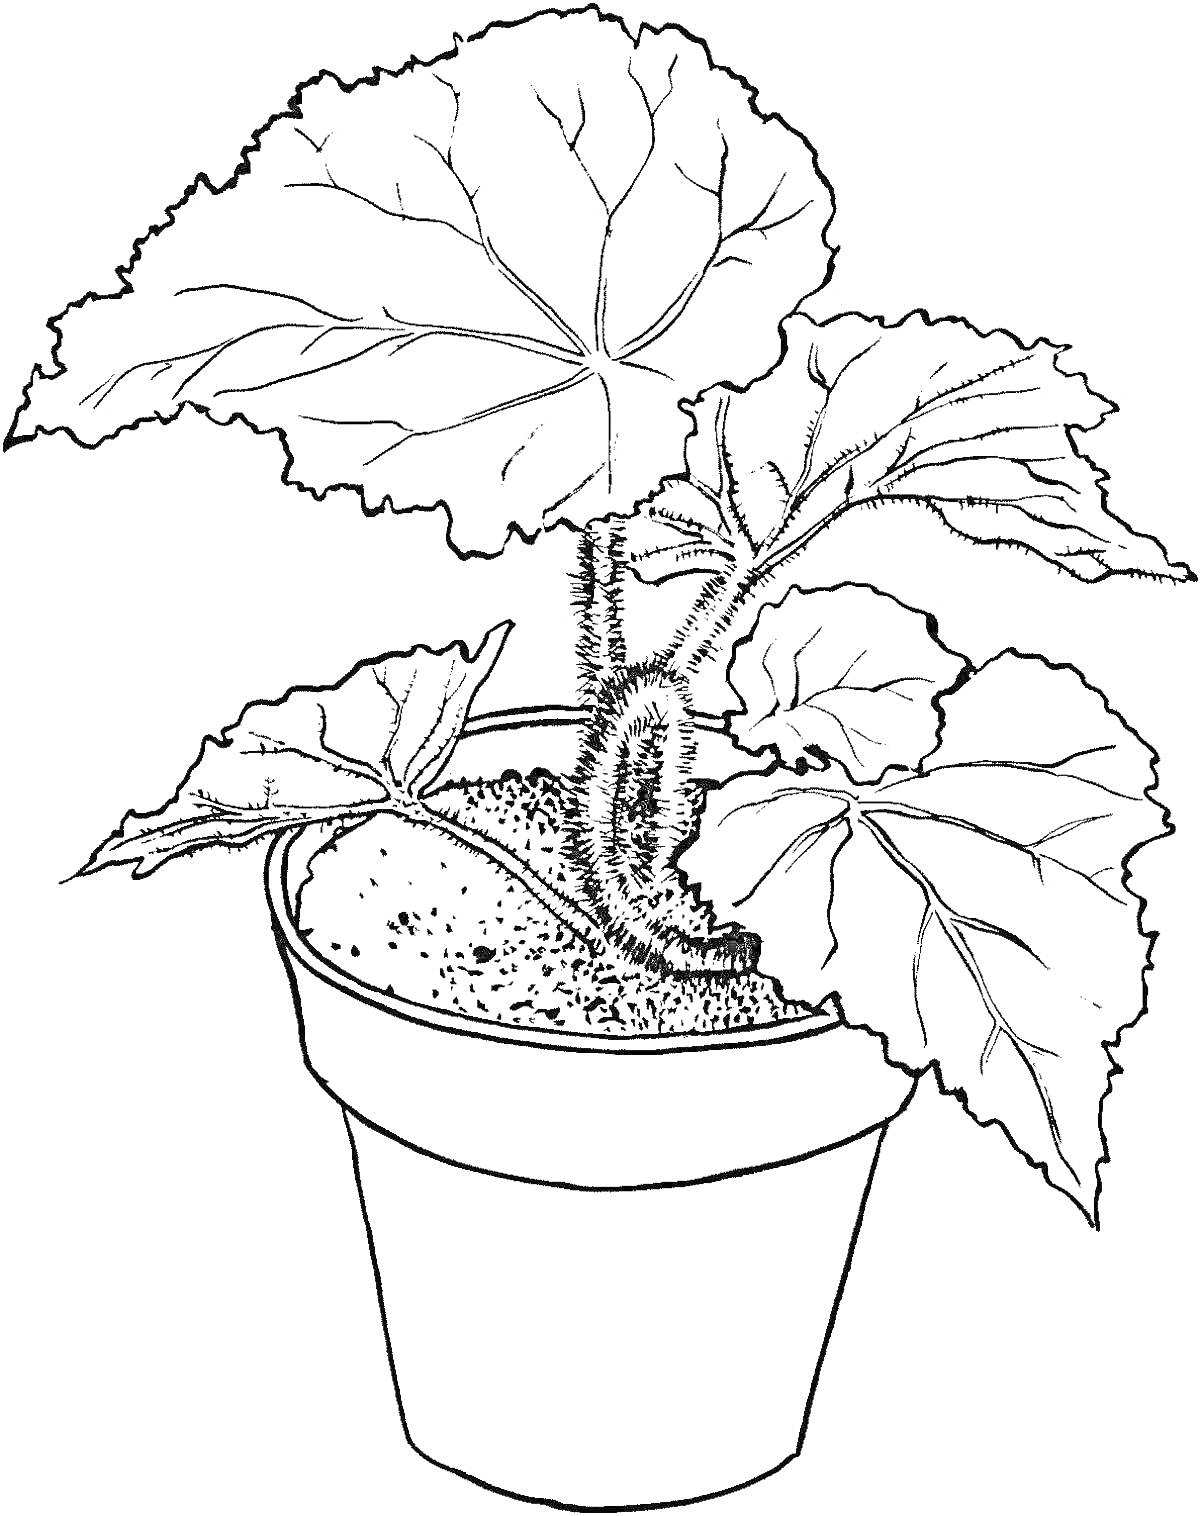 Раскраска Растение в горшке с большими листьями